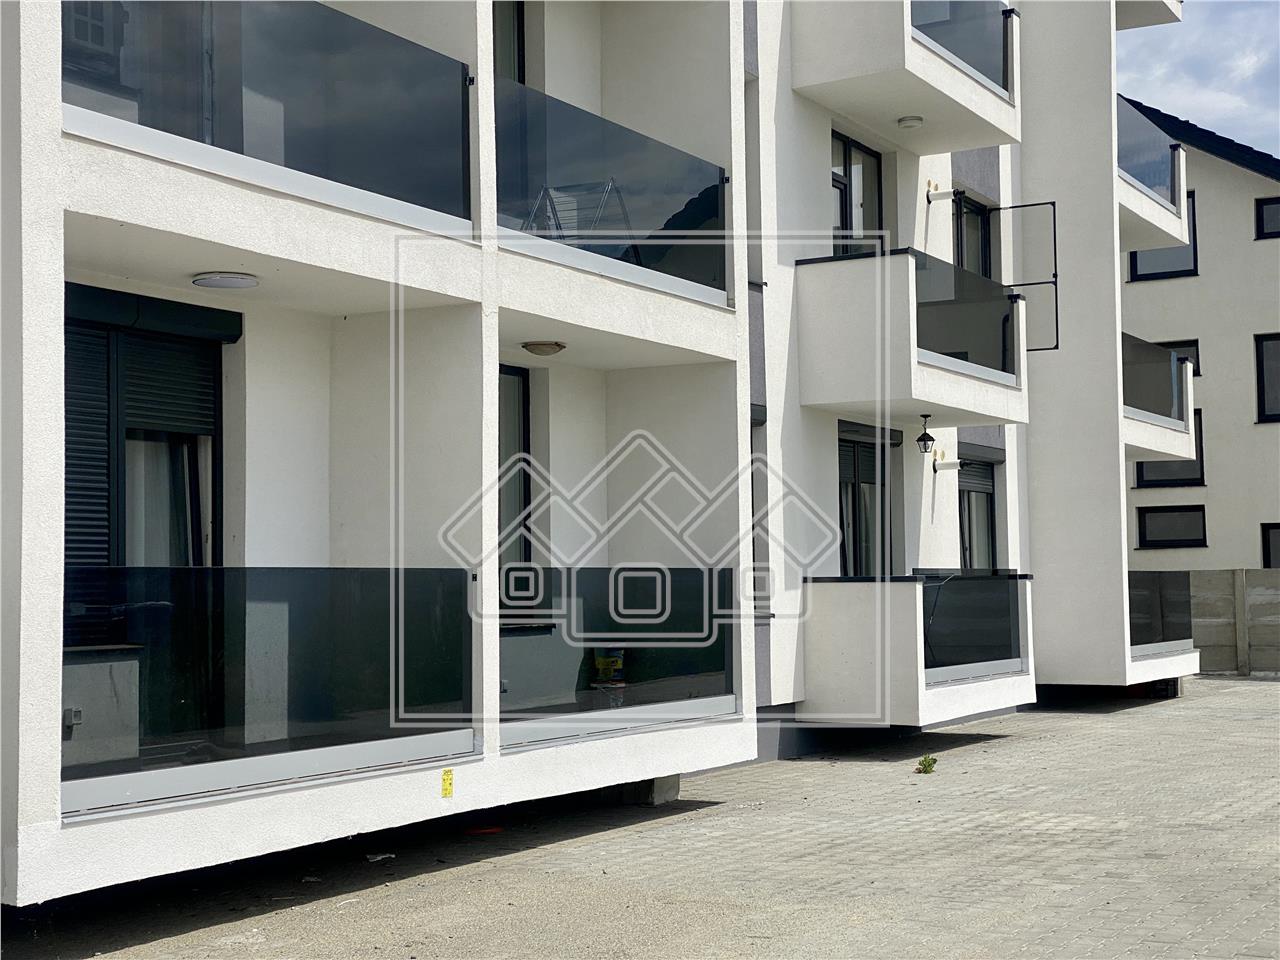 Apartament de vanzare in Sibiu - Selimbar - 3 camere si balcon